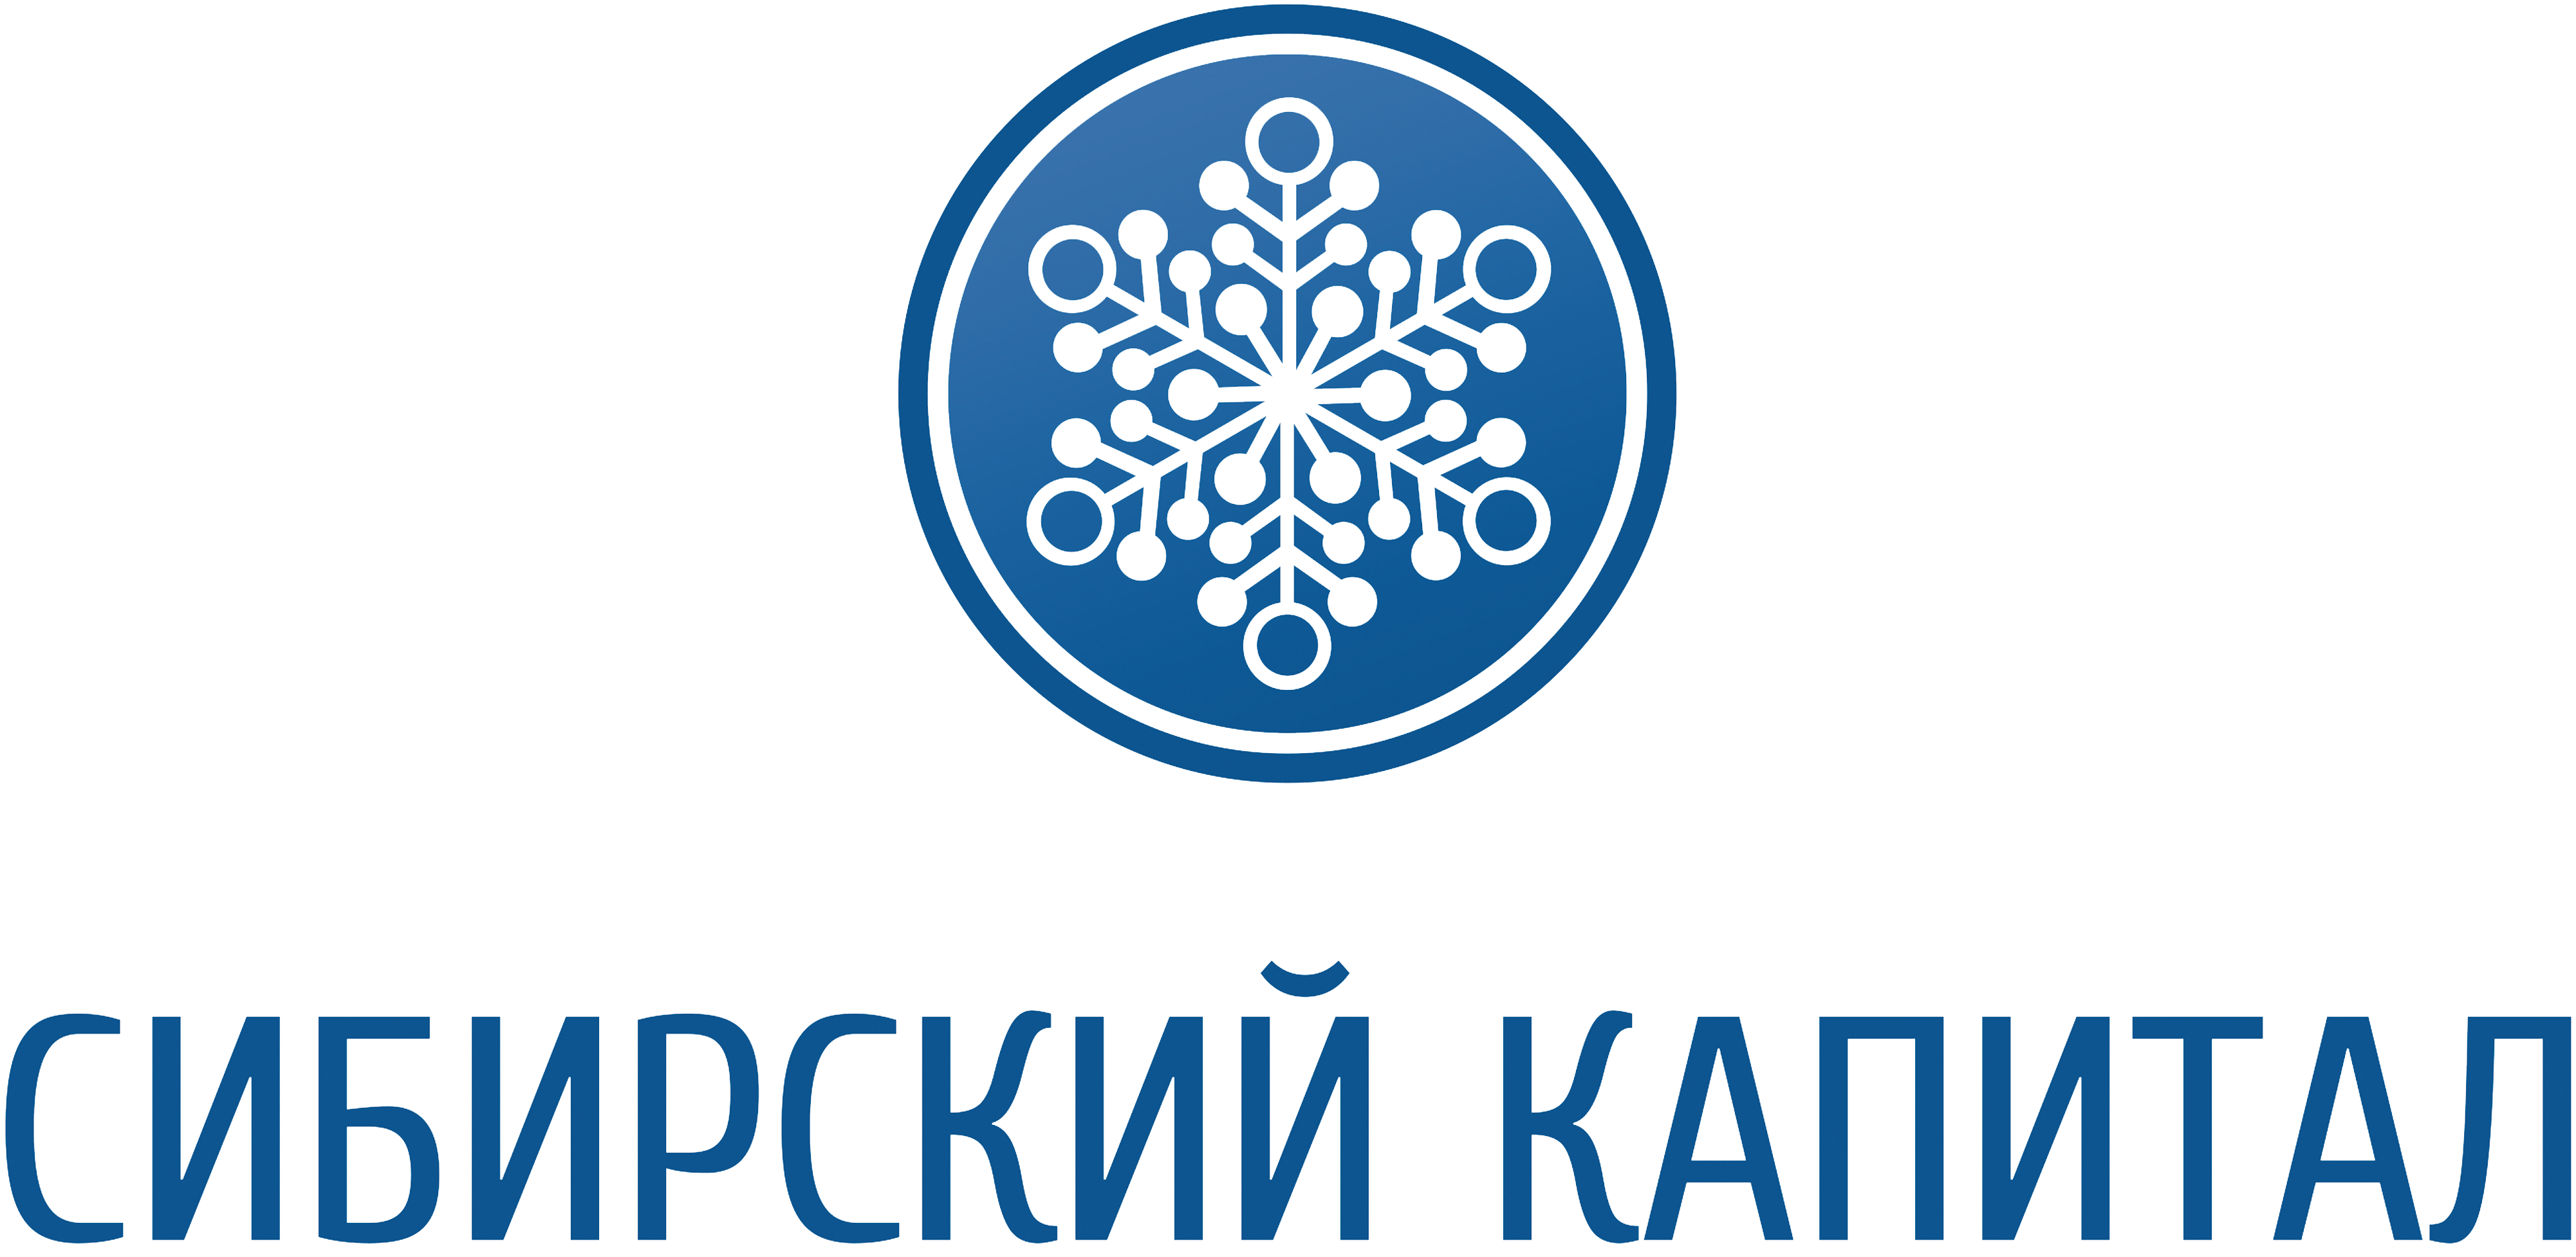 Логотип Сибирский капитал. Сибирский капитал Тюмень. МФО-Сибирь логотип. Сибирский капитал телефон